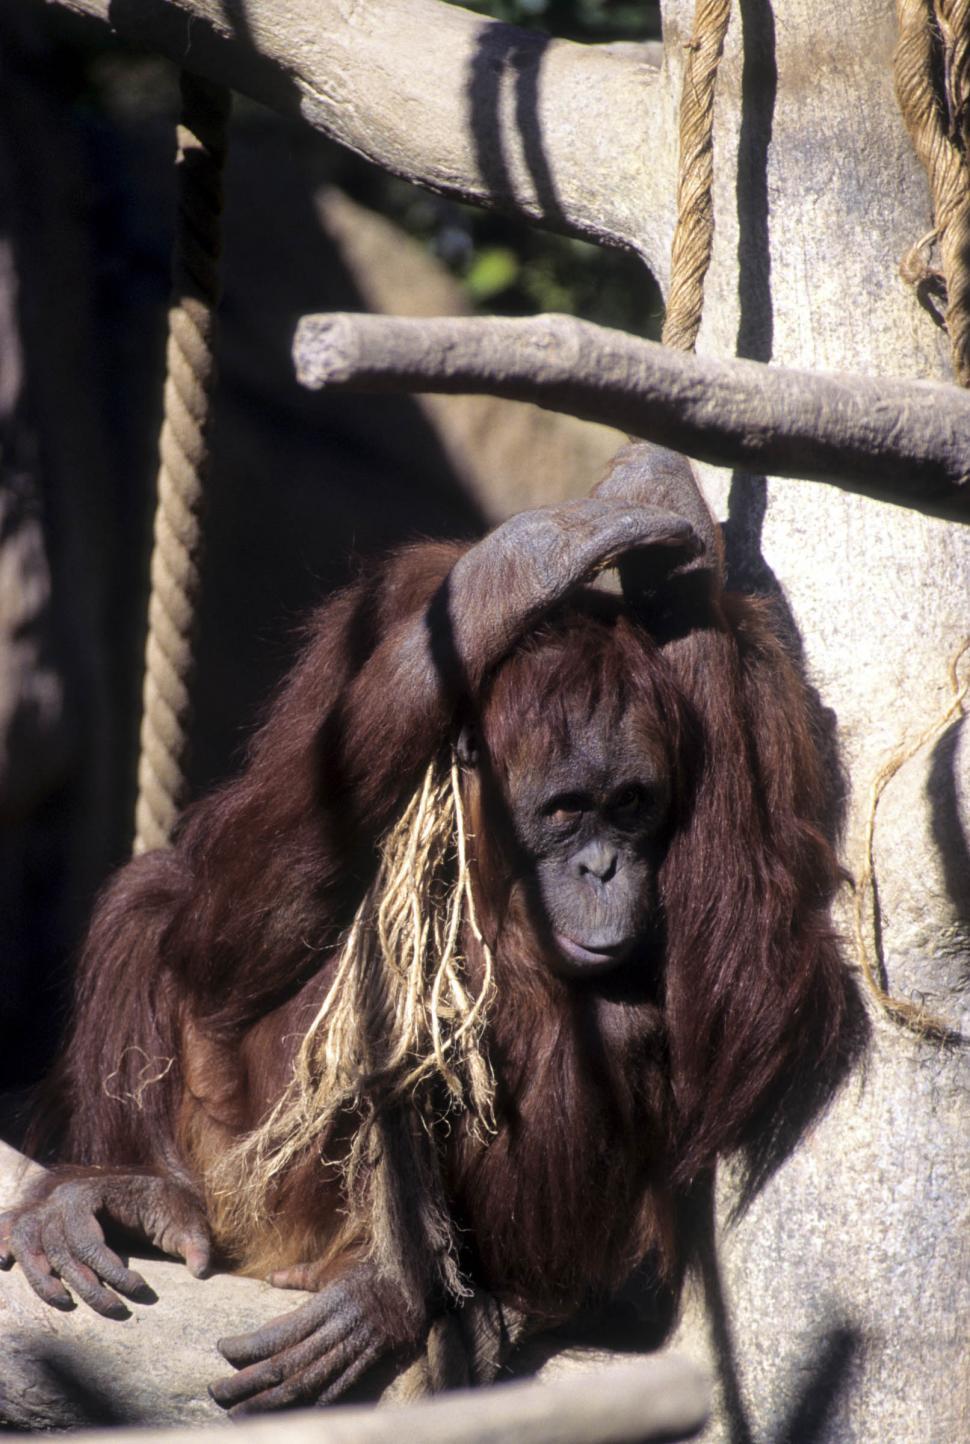 Free Image of Orangutan in Zoo 